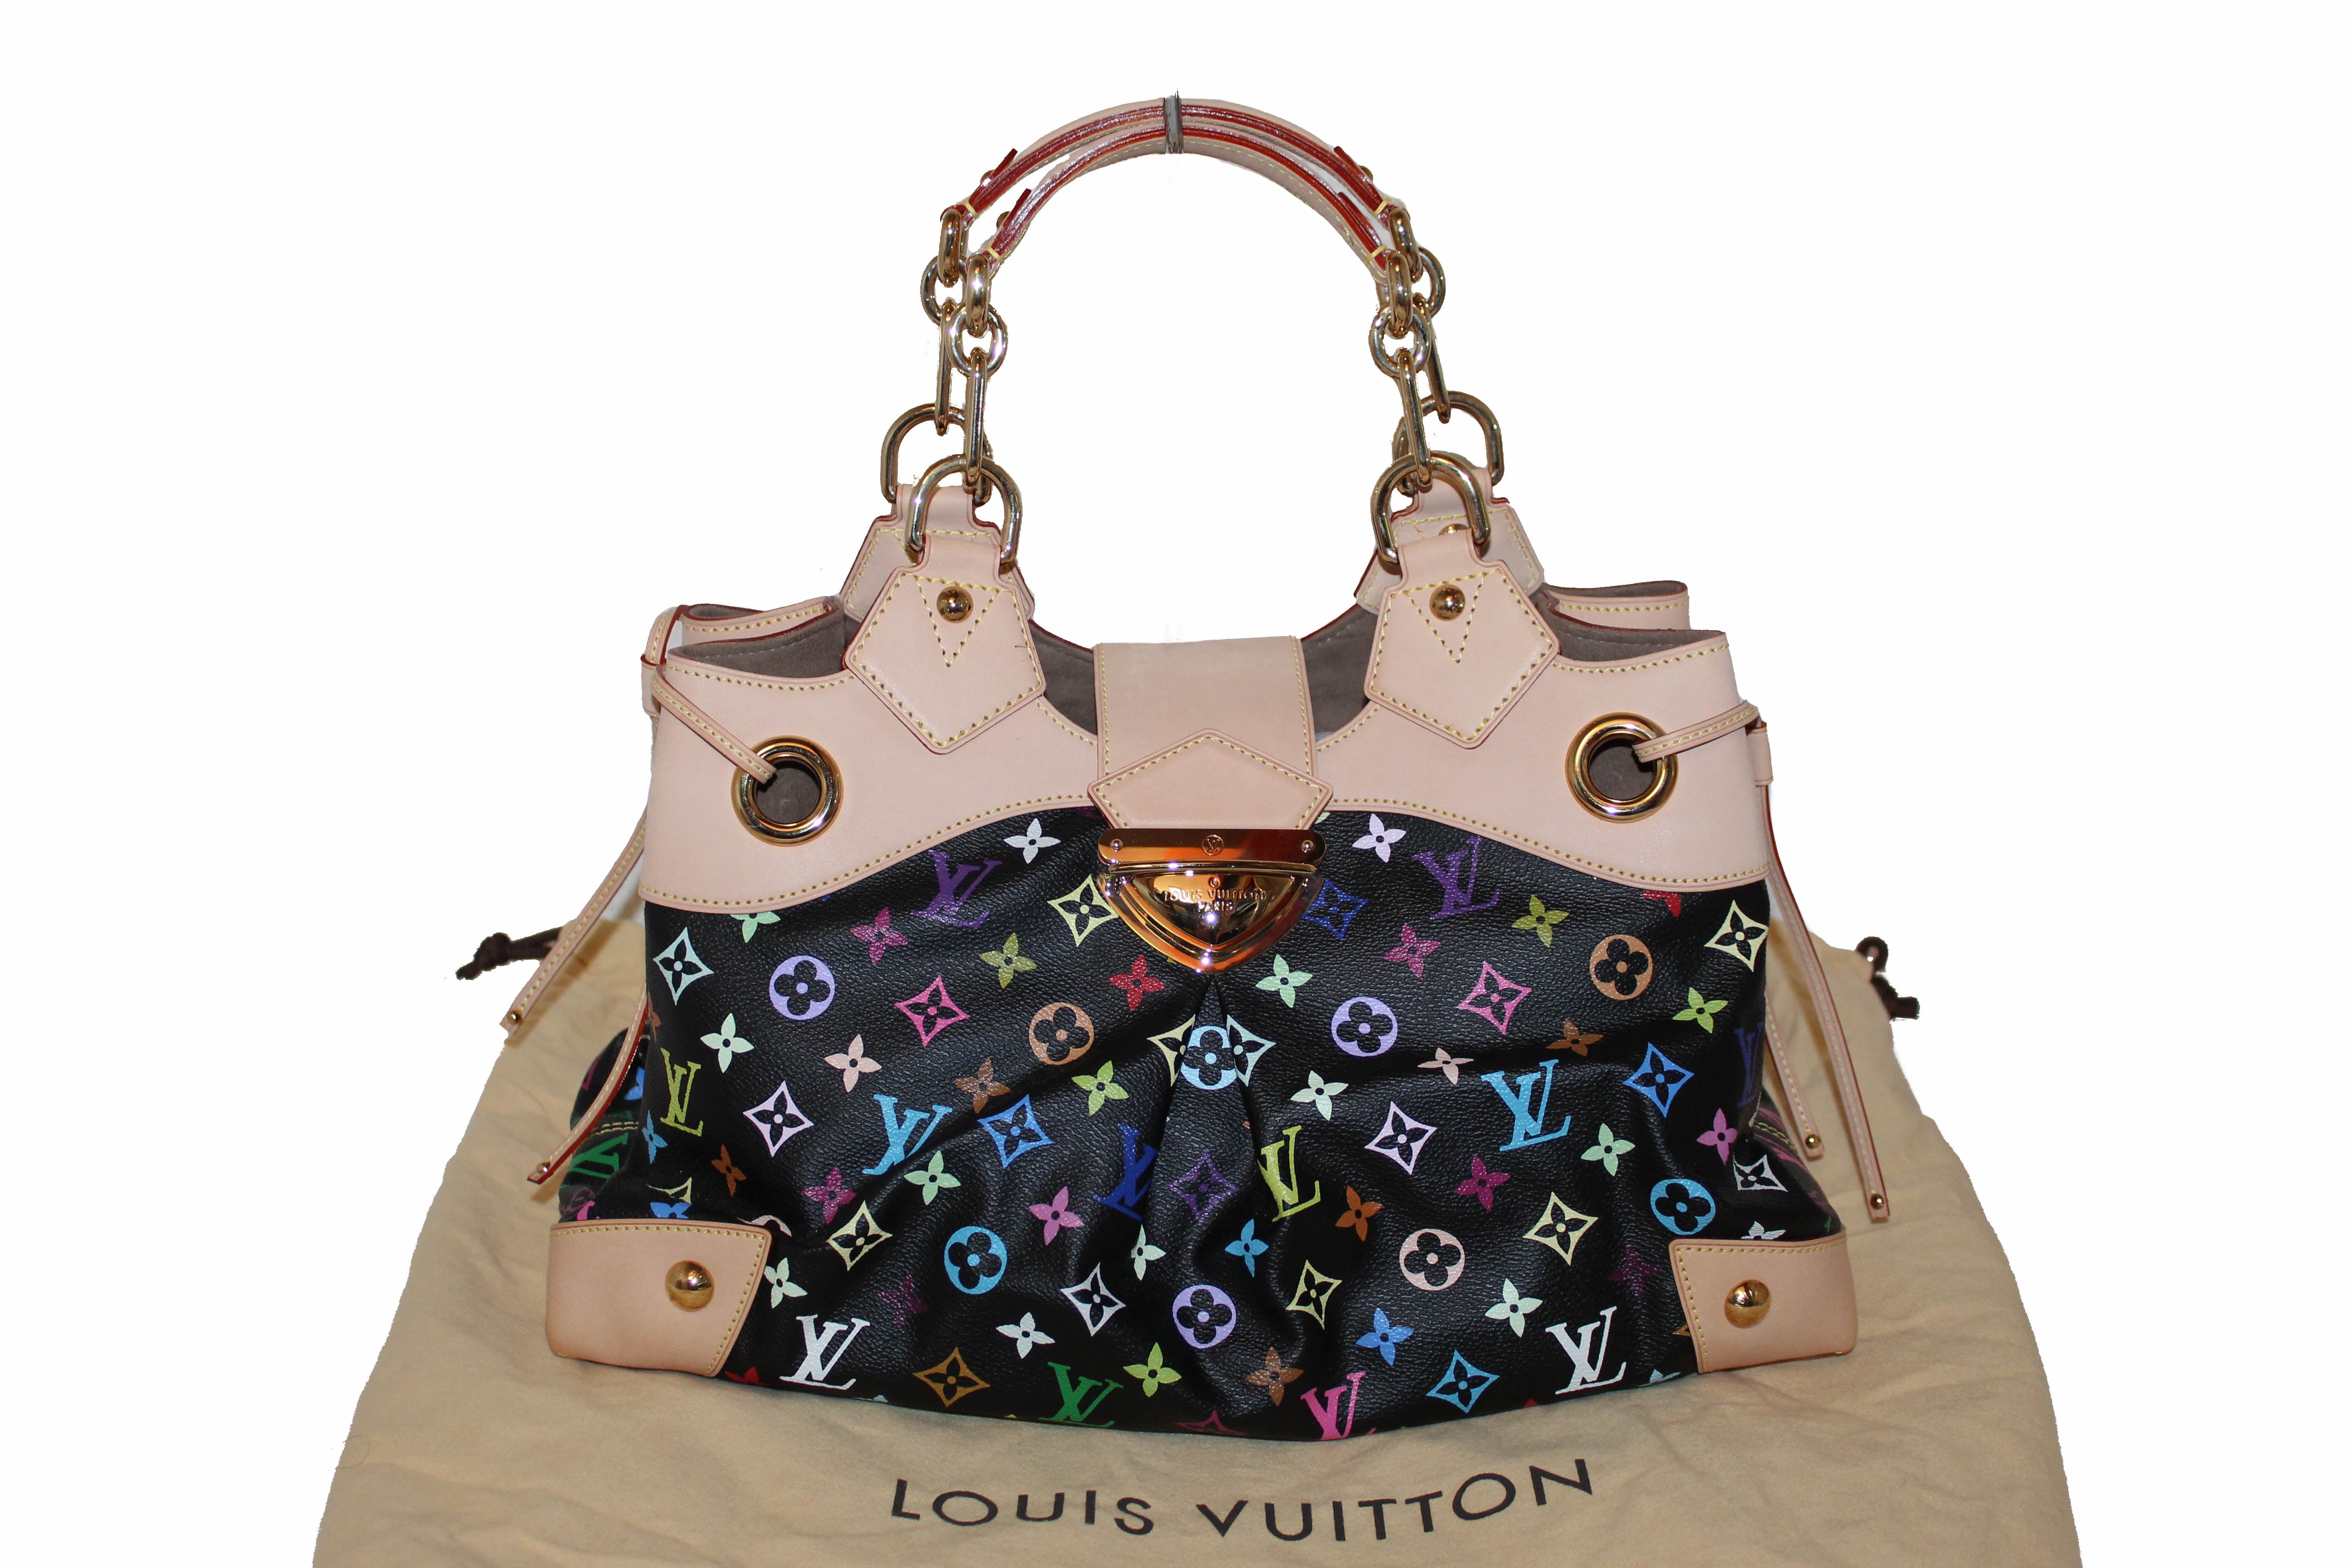 Louis Vuitton Handbag Ursula Mulico Noir Model M40124 Original LV